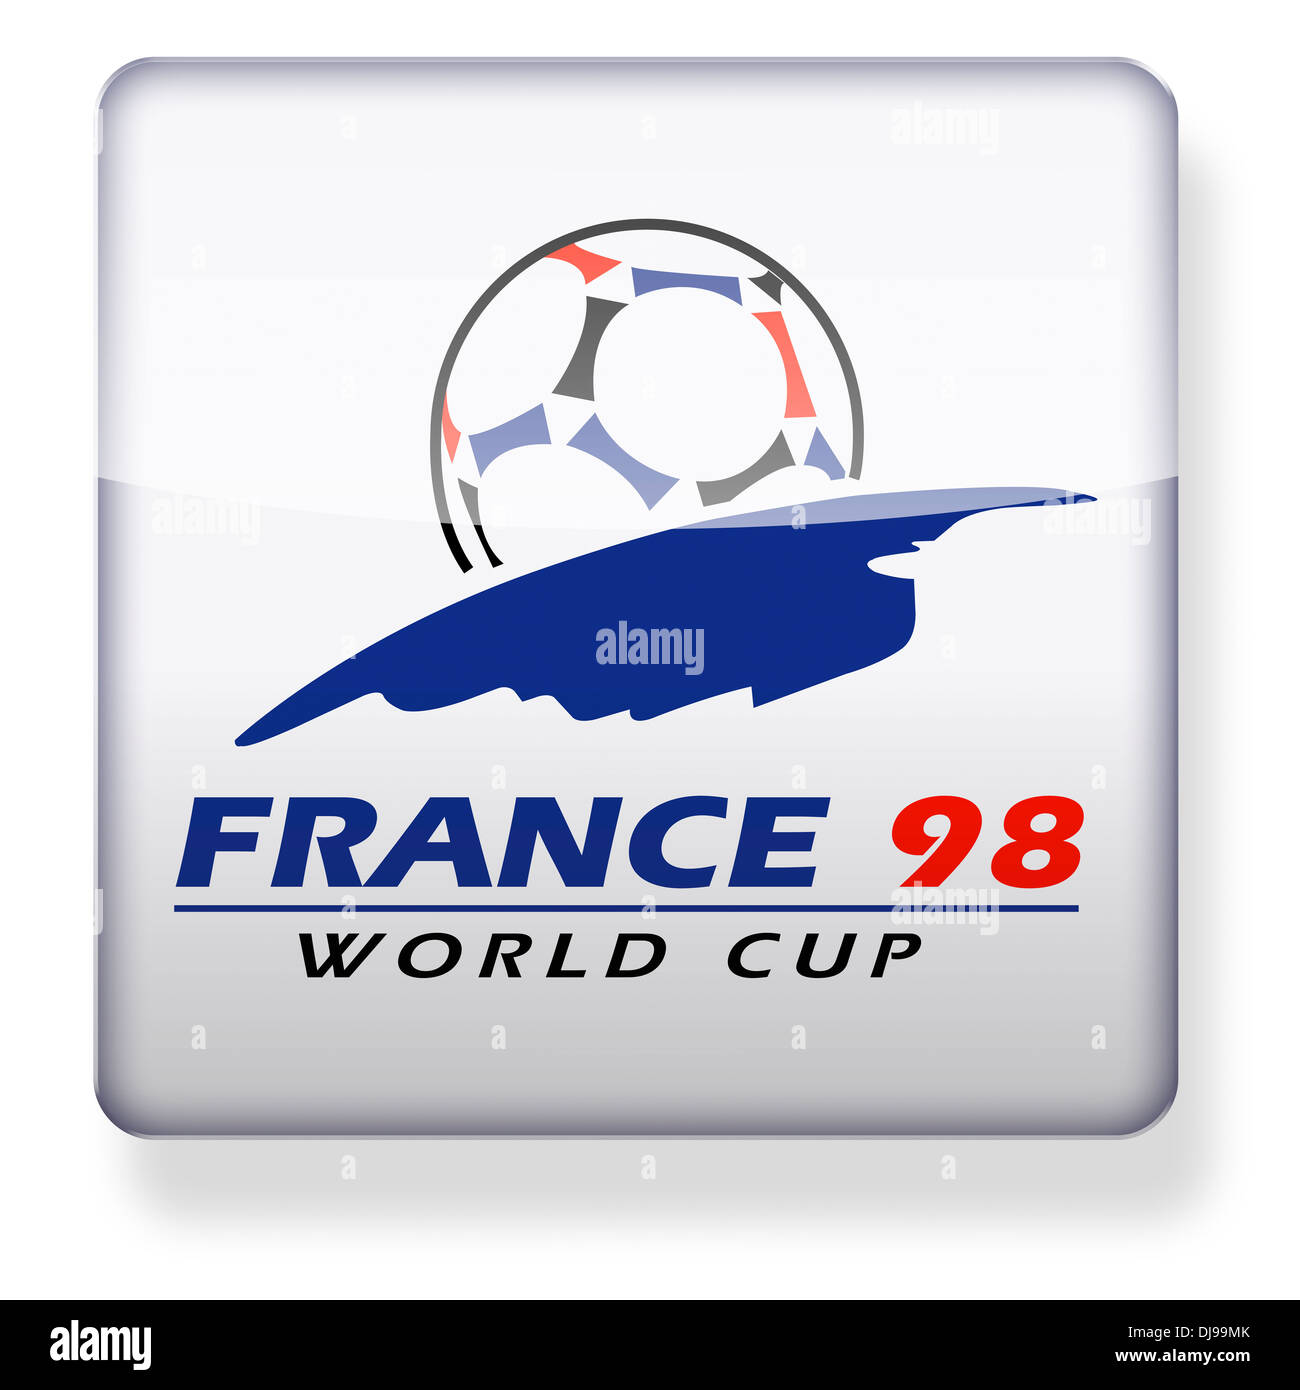 Coupe du monde 1998 Banque de photographies et d'images à haute résolution  - Alamy